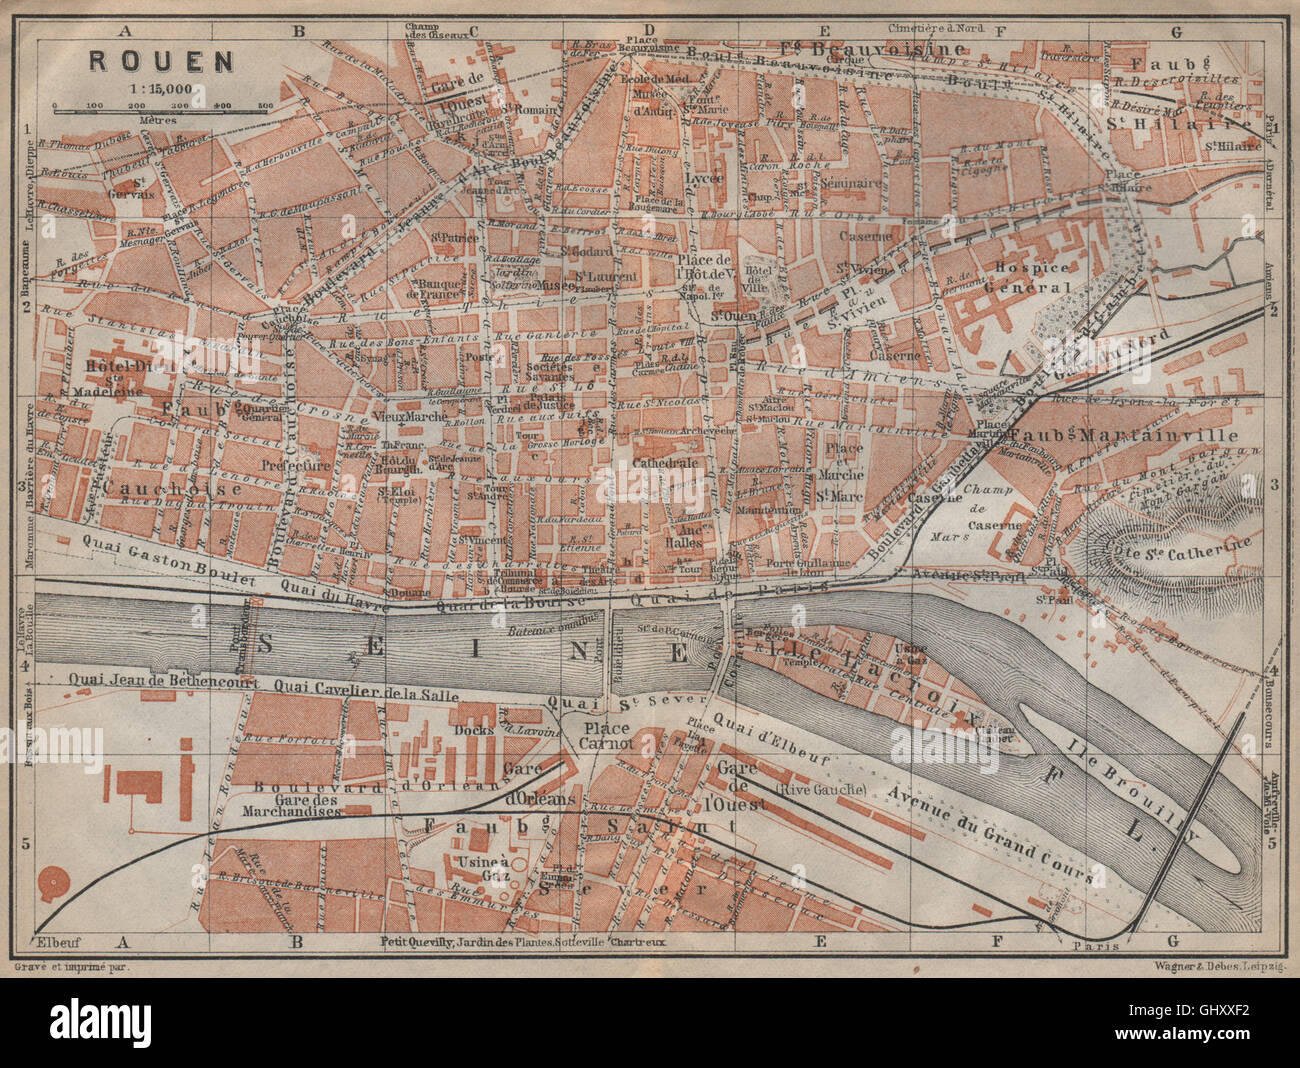 ROUEN antique town city plan de la ville. Seine-Maritime carte, 1909 old map Stock Photo